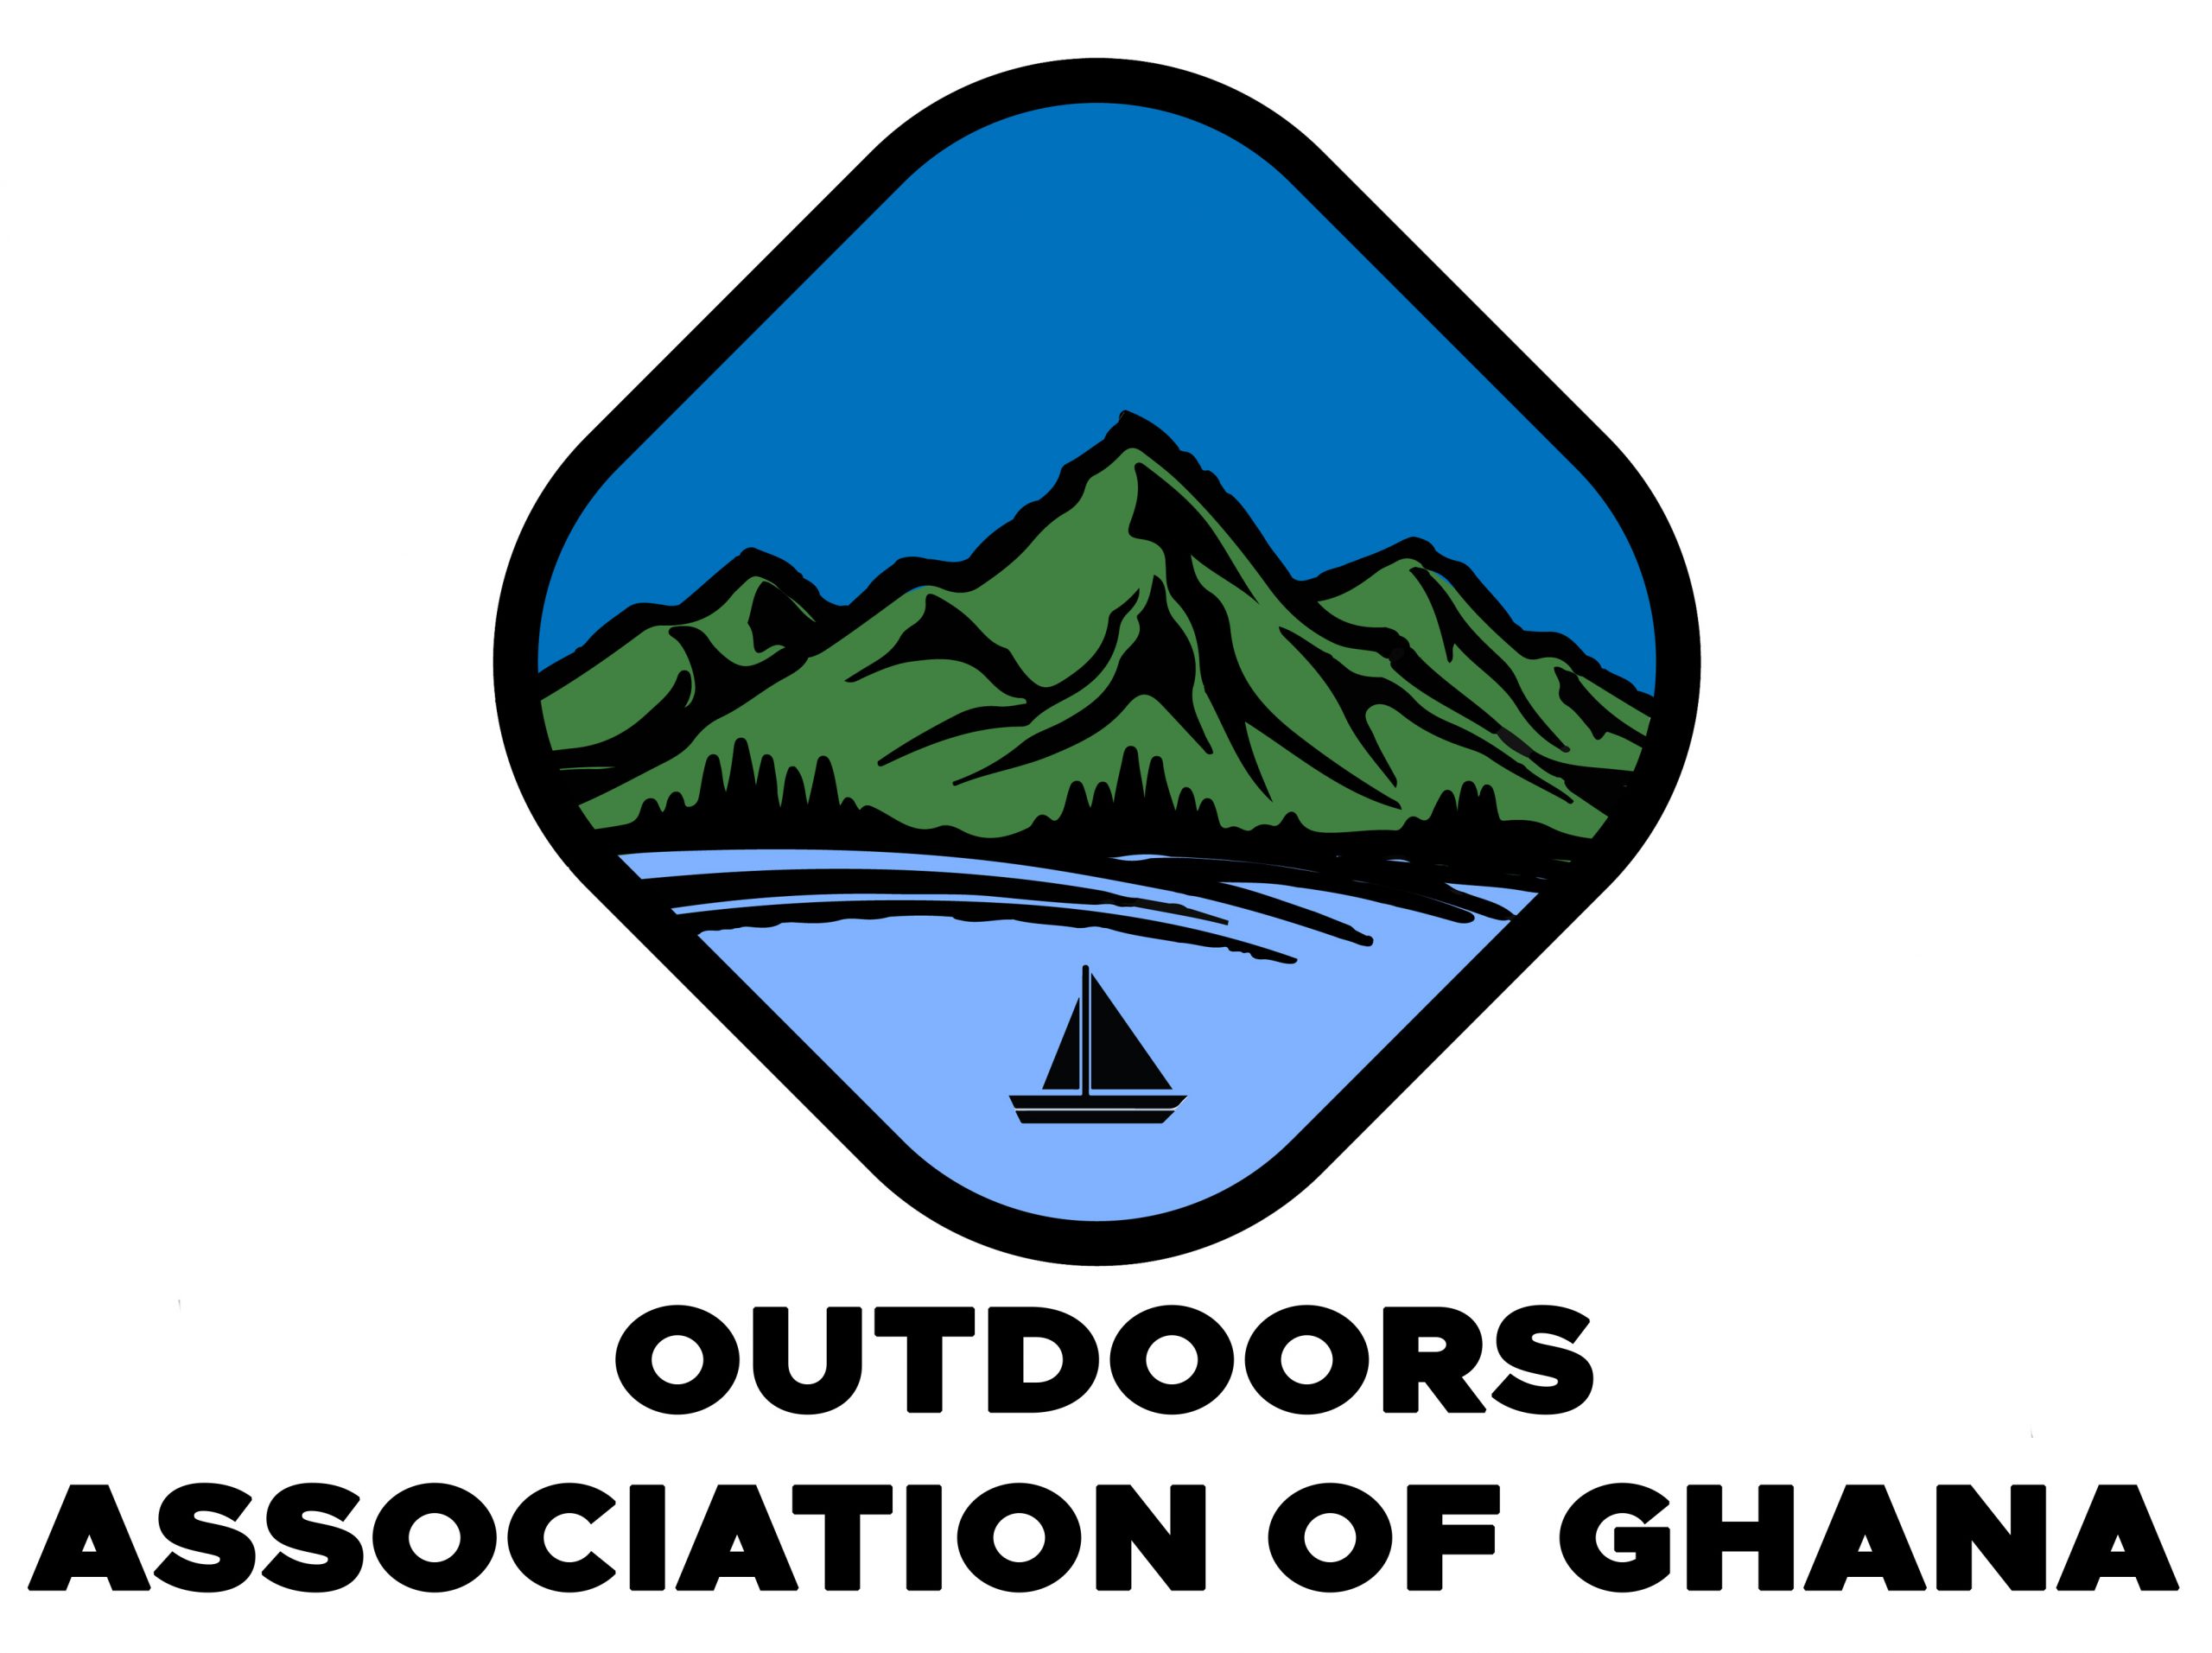 Outdoors Association of Ghana